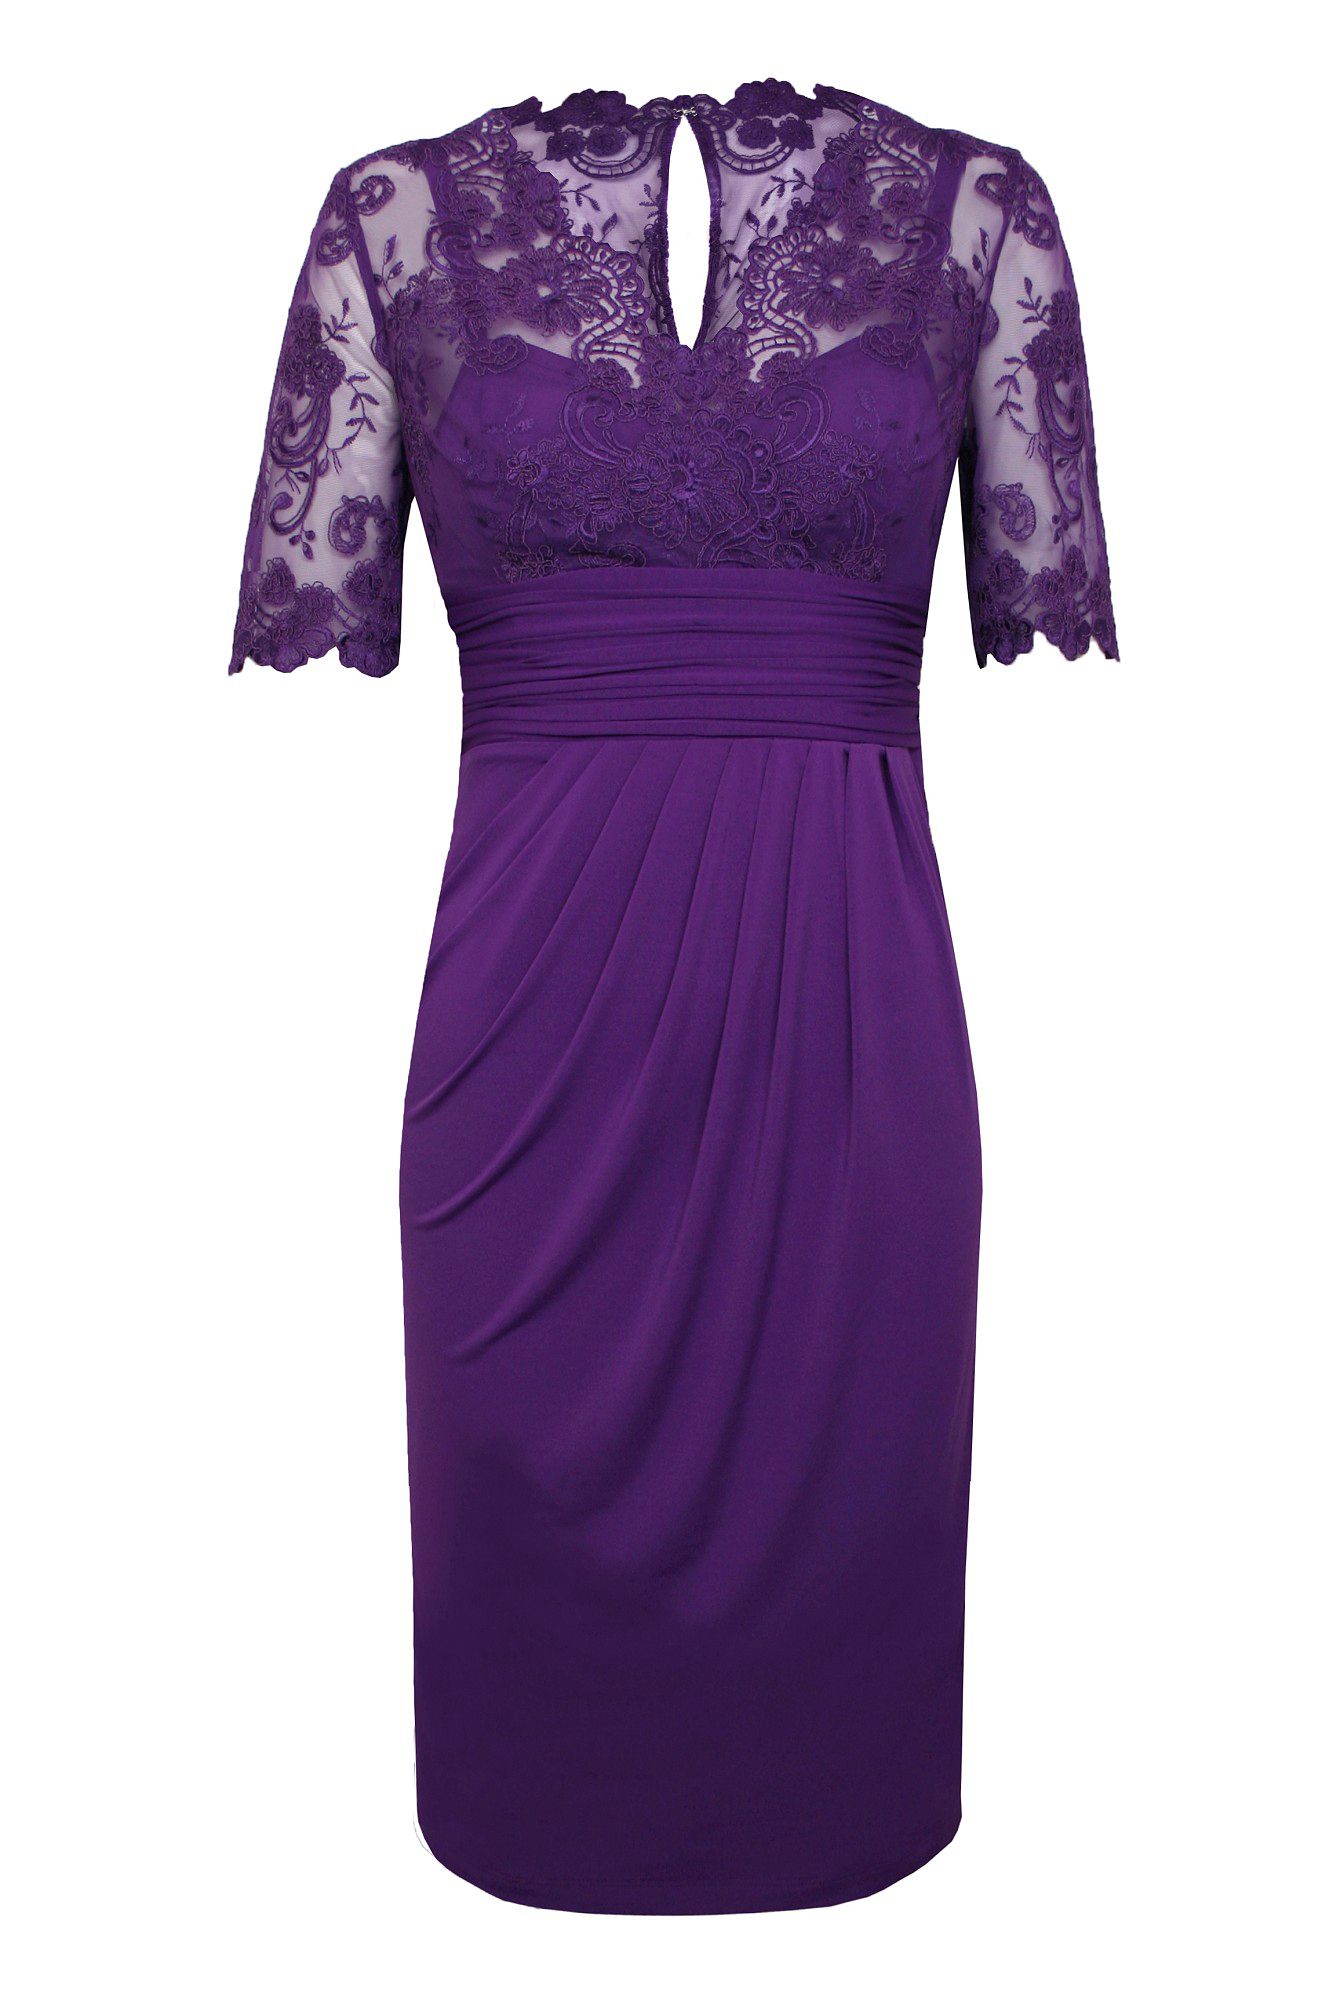 Alexon Lace Top Dress in Purple (Dark Purple)